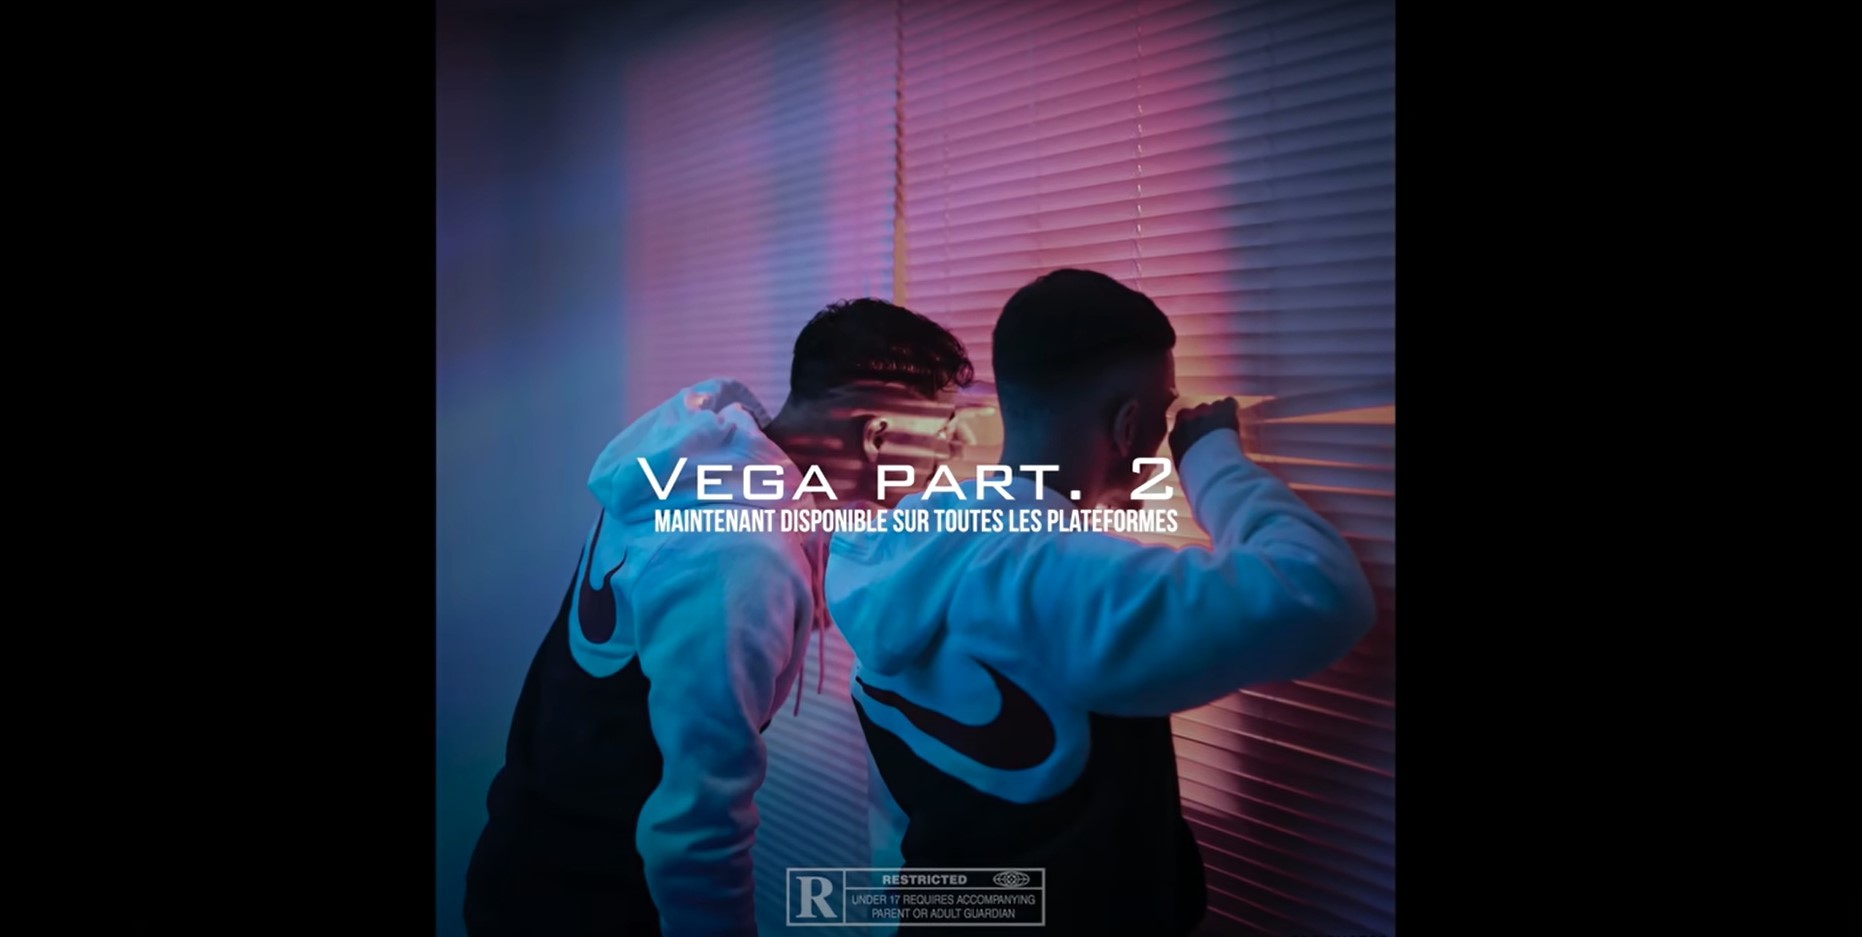 Les titres de "Vega Part. 2" cumulent déjà à plusieurs milliers de vues.